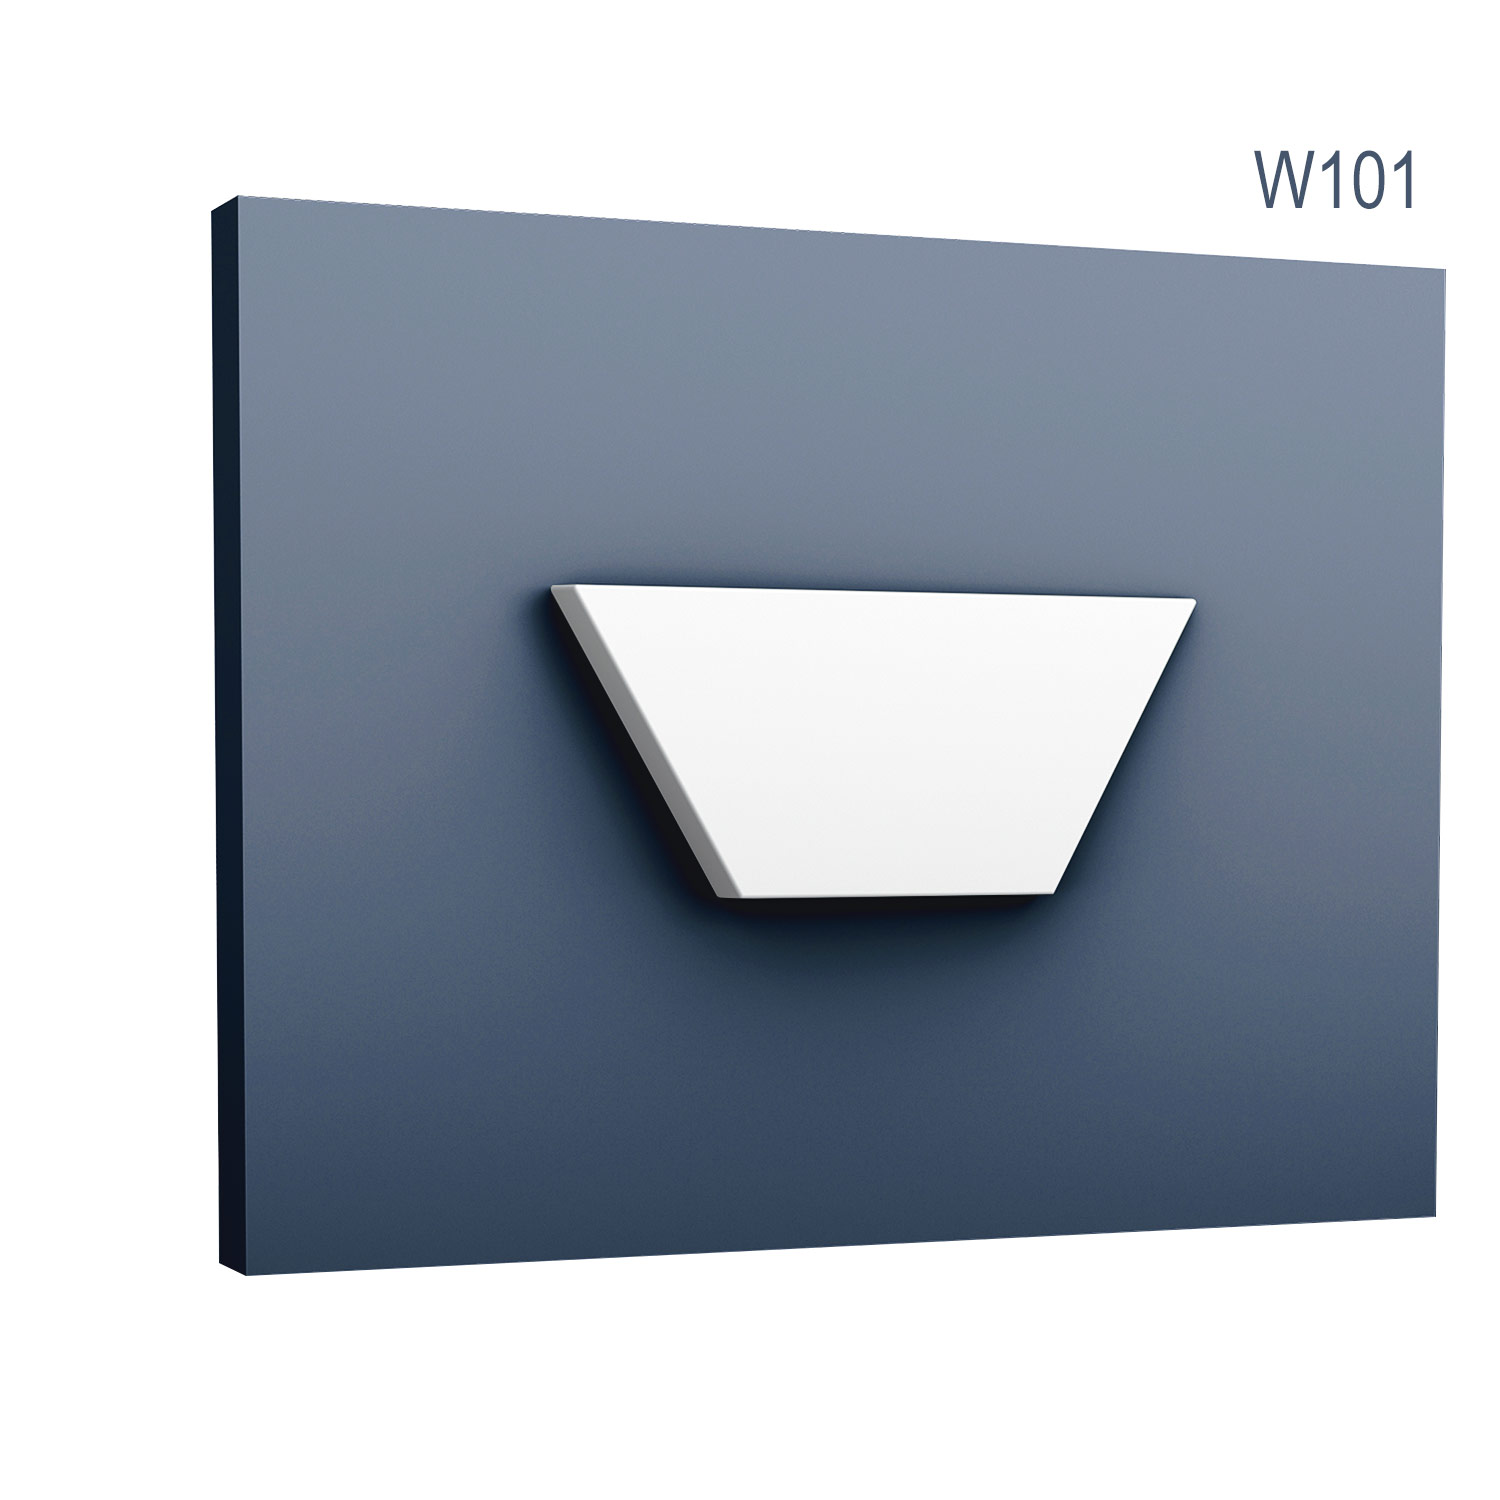 Panel Modern W101, Dimensiuni: 15 X 34.5 X 2.9 cm, Orac Decor Orac Decor